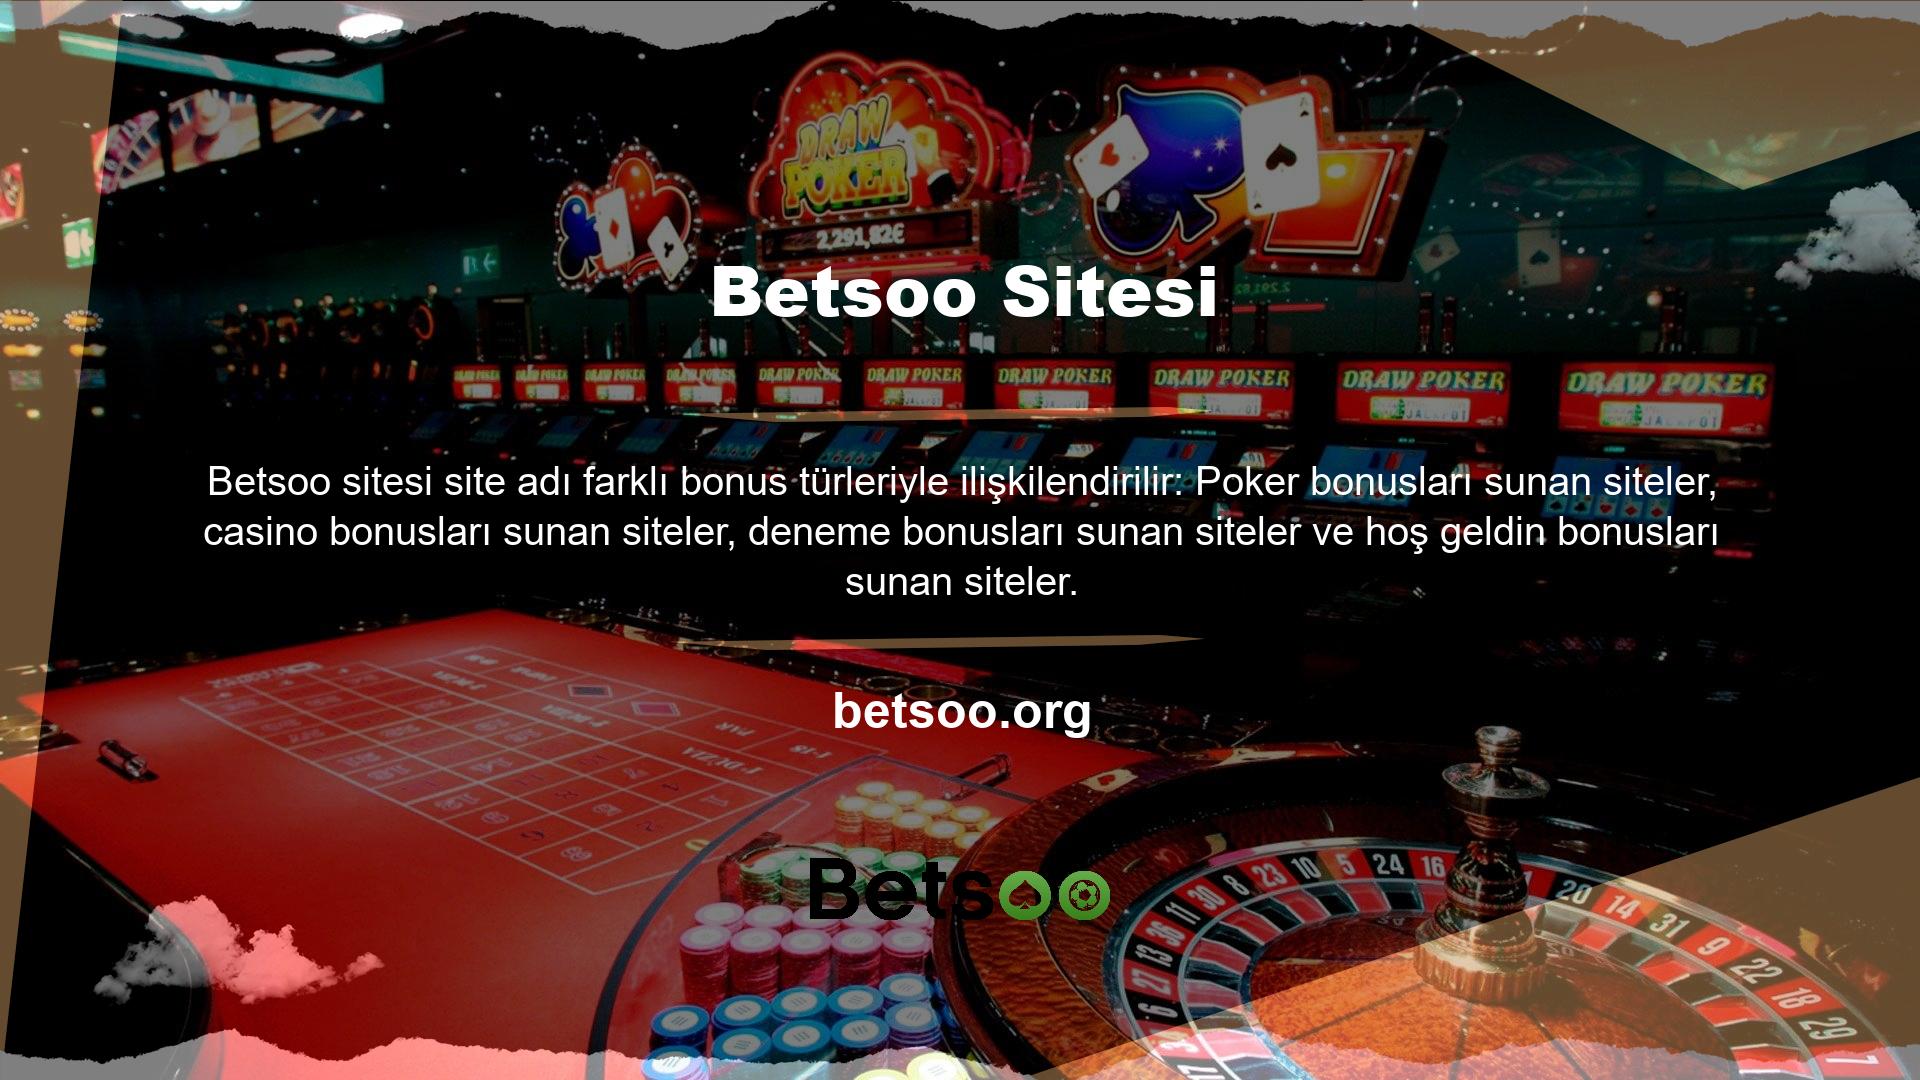 Bahis sitesinde oynanan her oyun için kullanıcılara farklı türde bonuslar sunulmaktadır